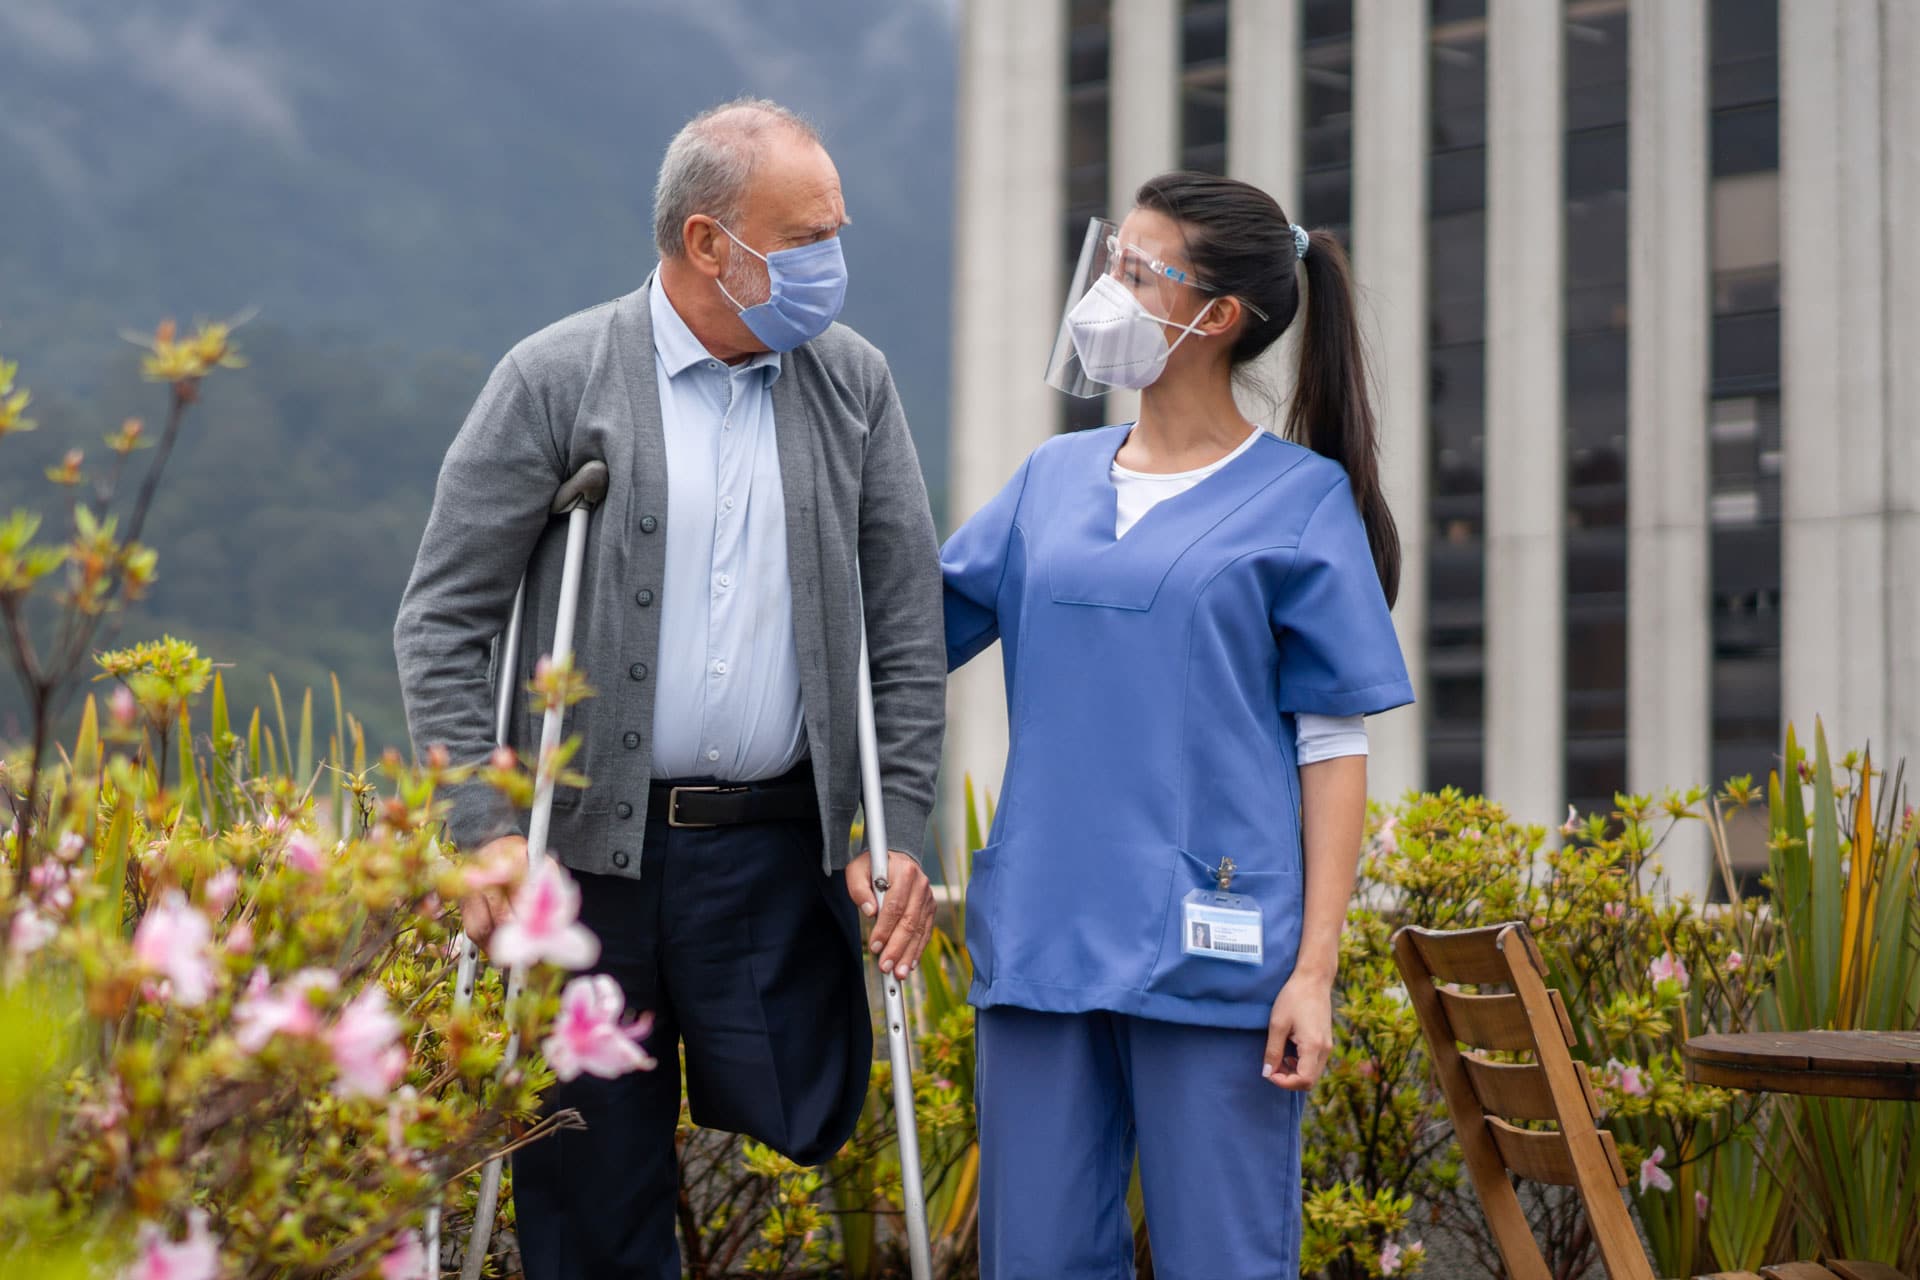 certified nurse talking an elderly patient on a walk outdoors